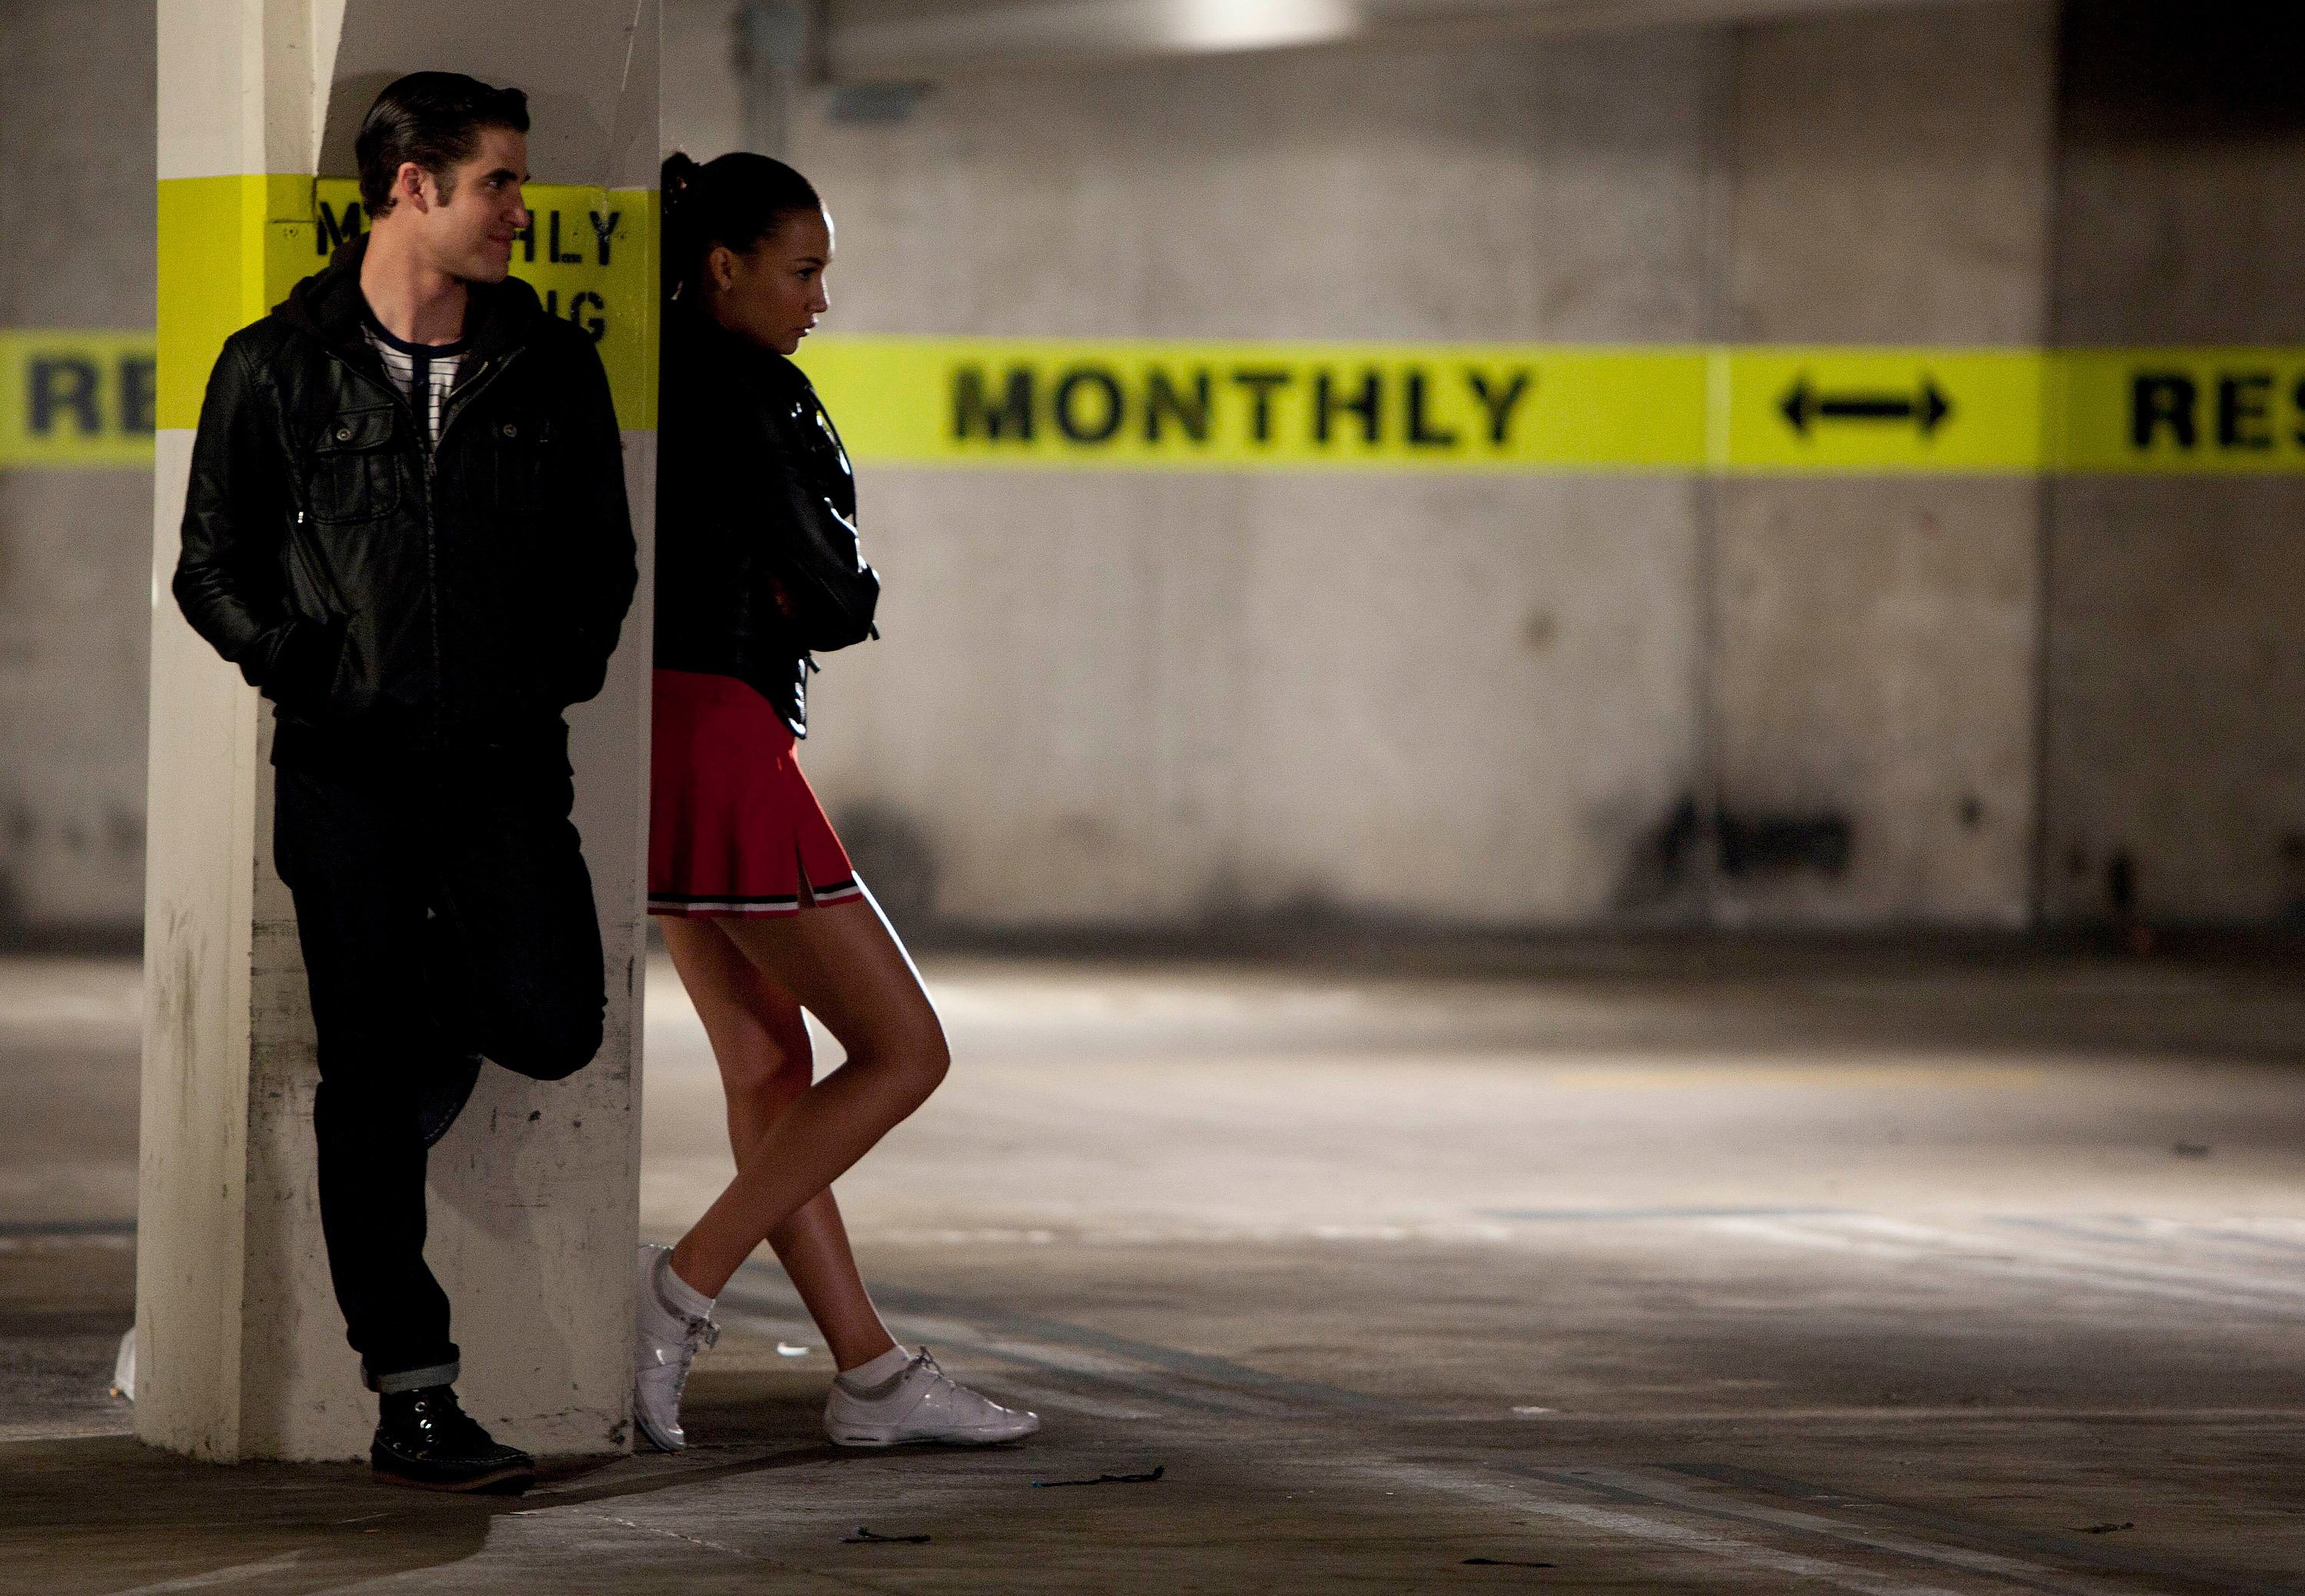 'Glee' stars Darren Criss and Naya Rivera